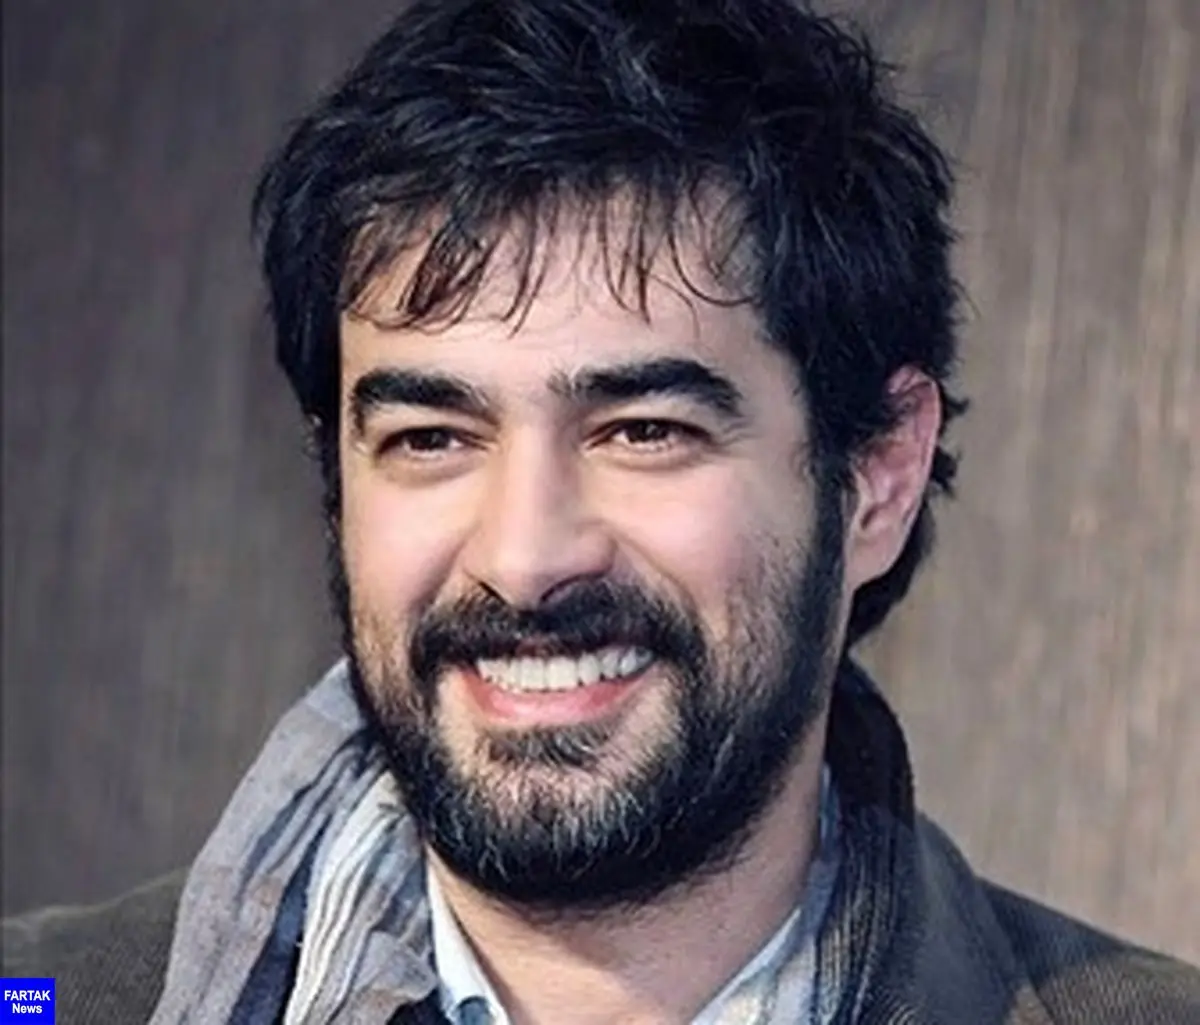  فیلم "شهاب حسینی"، نامزد جشنواره بریتانیایی